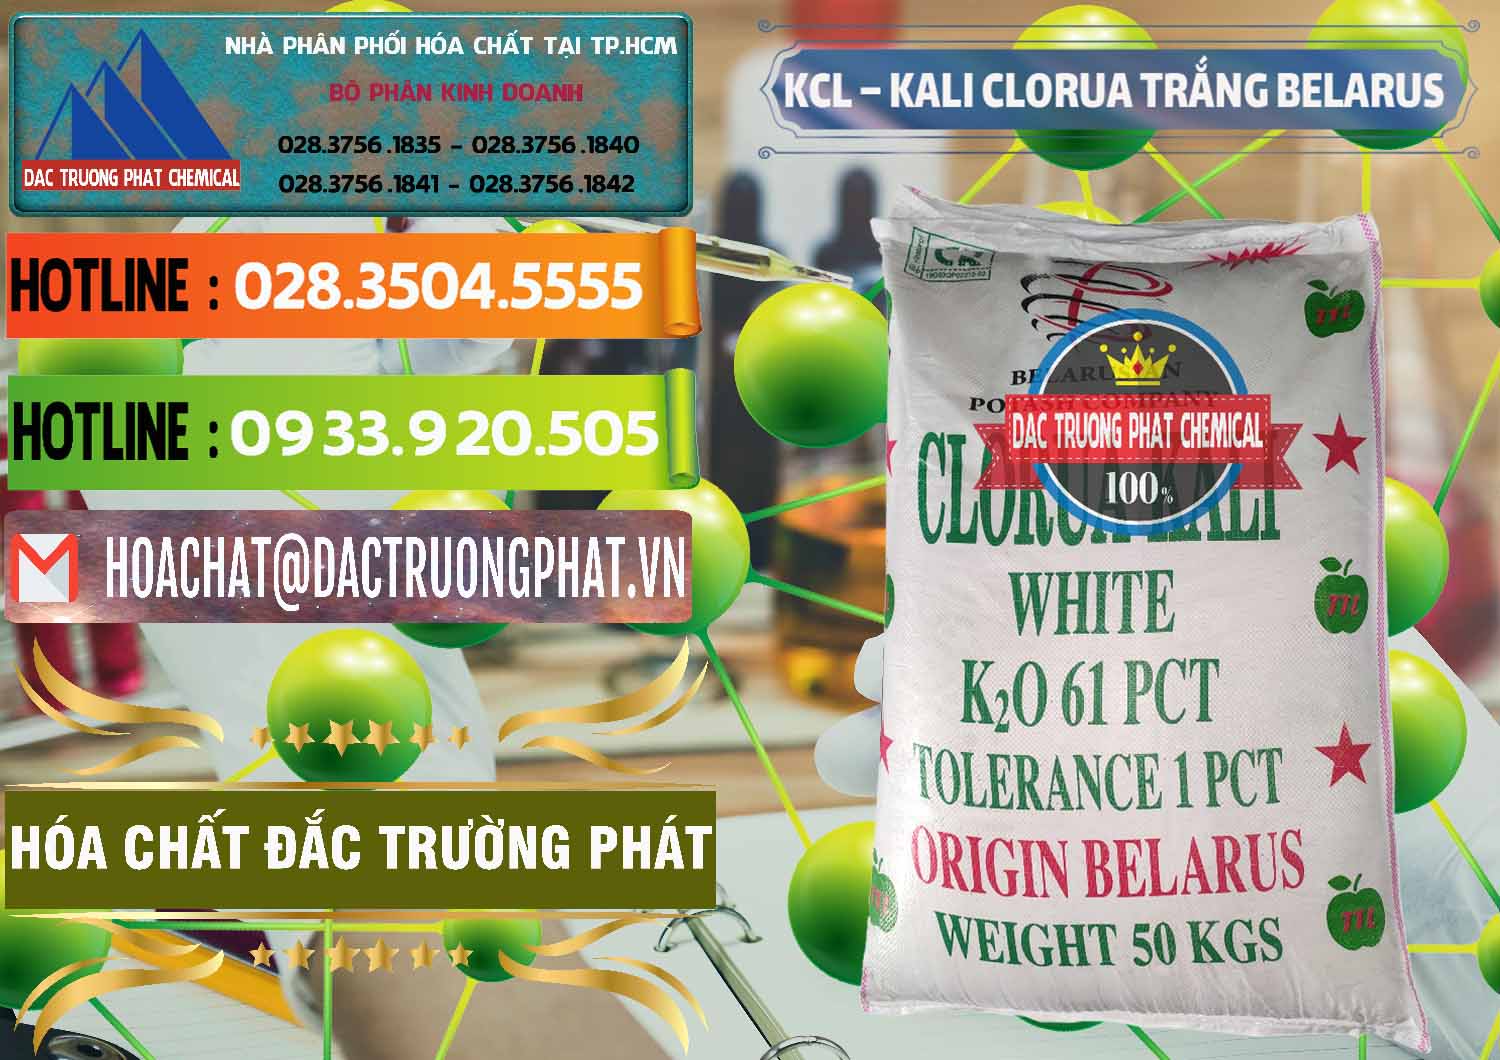 Nơi cung ứng và bán KCL – Kali Clorua Trắng Belarus - 0085 - Công ty phân phối và bán hóa chất tại TP.HCM - cungcaphoachat.com.vn